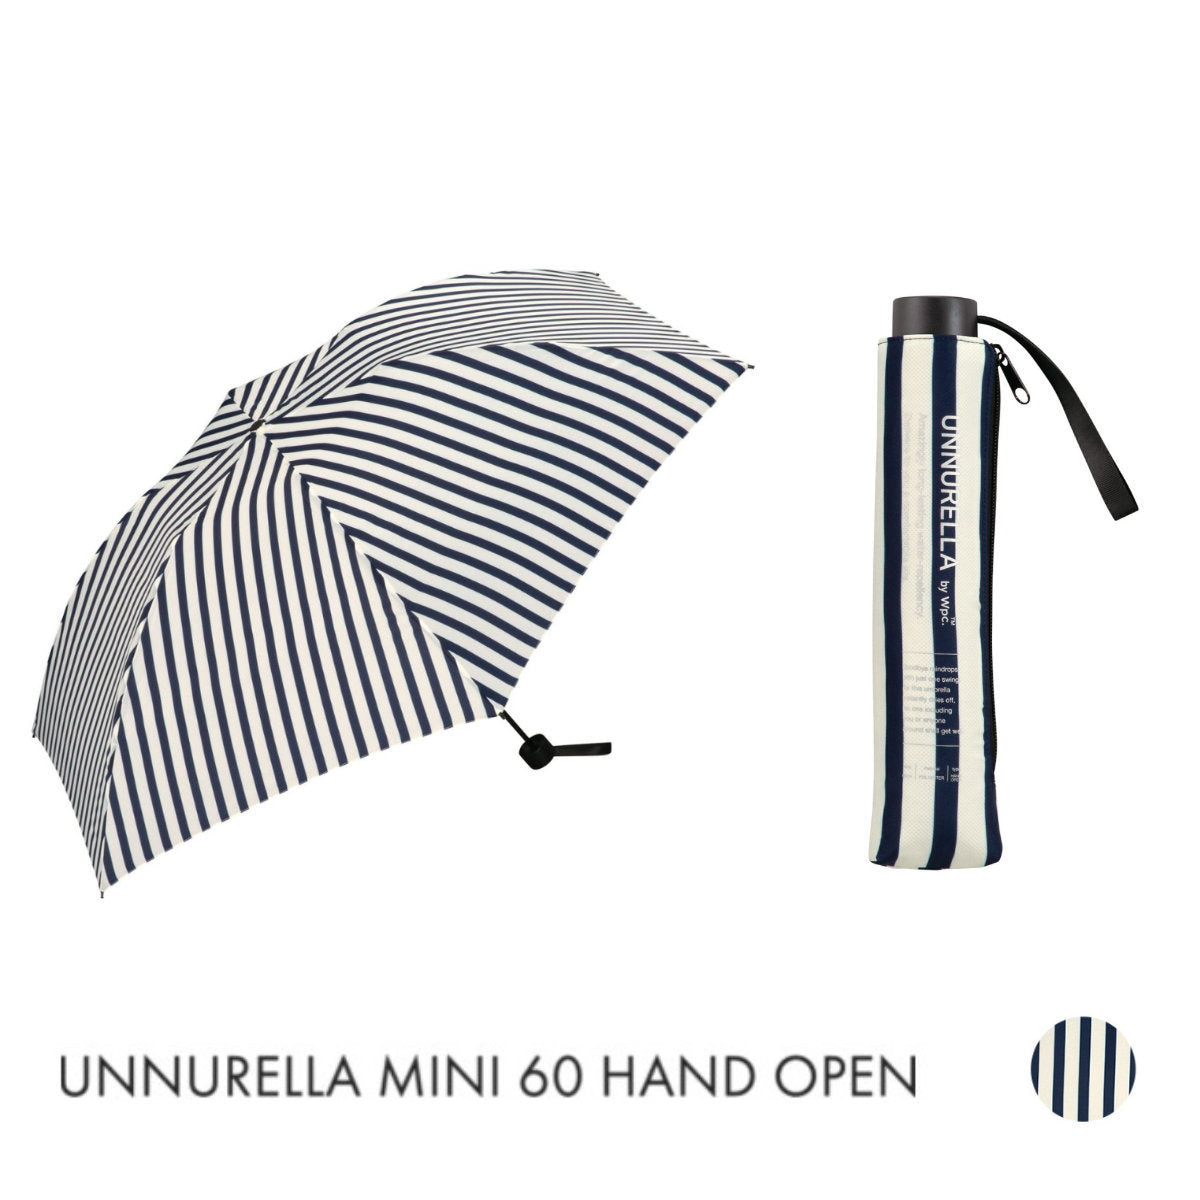 WPC - UNNURELLA MINI 60 Super Waterproof Folding Umbrella UN002 - Blue and White Straight Room